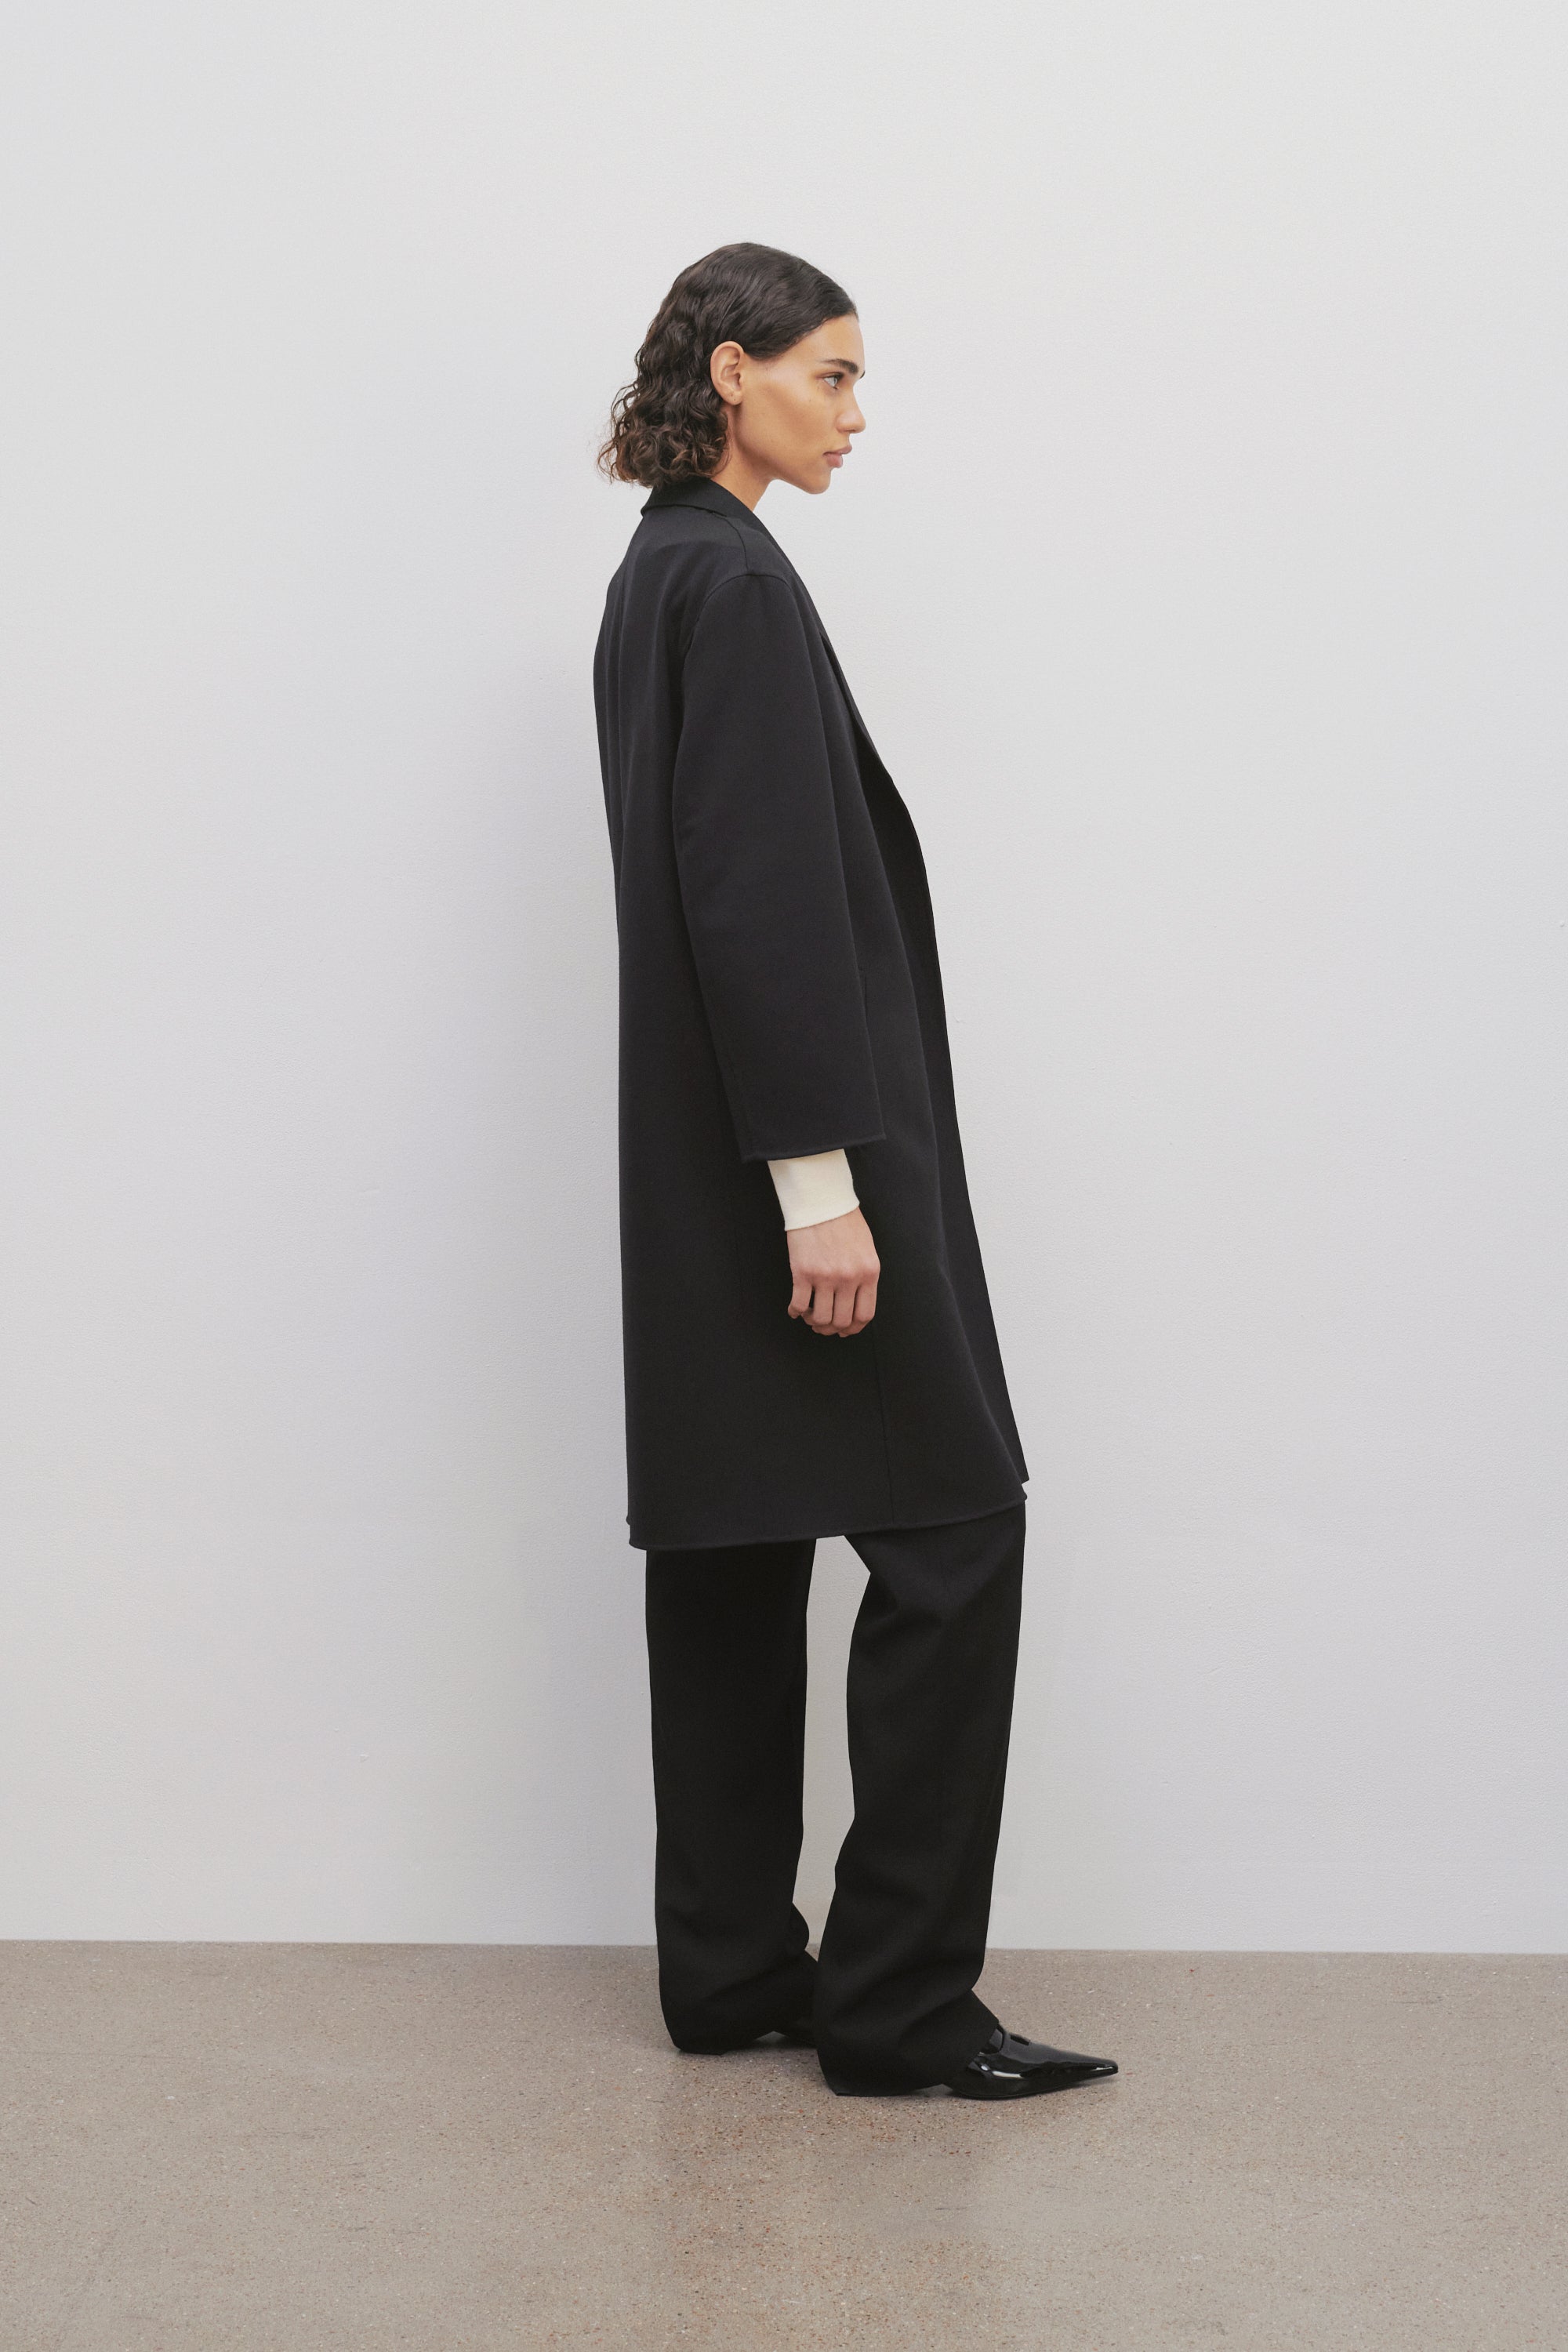 Fedra Jacket Black in Virgin Wool – The Row